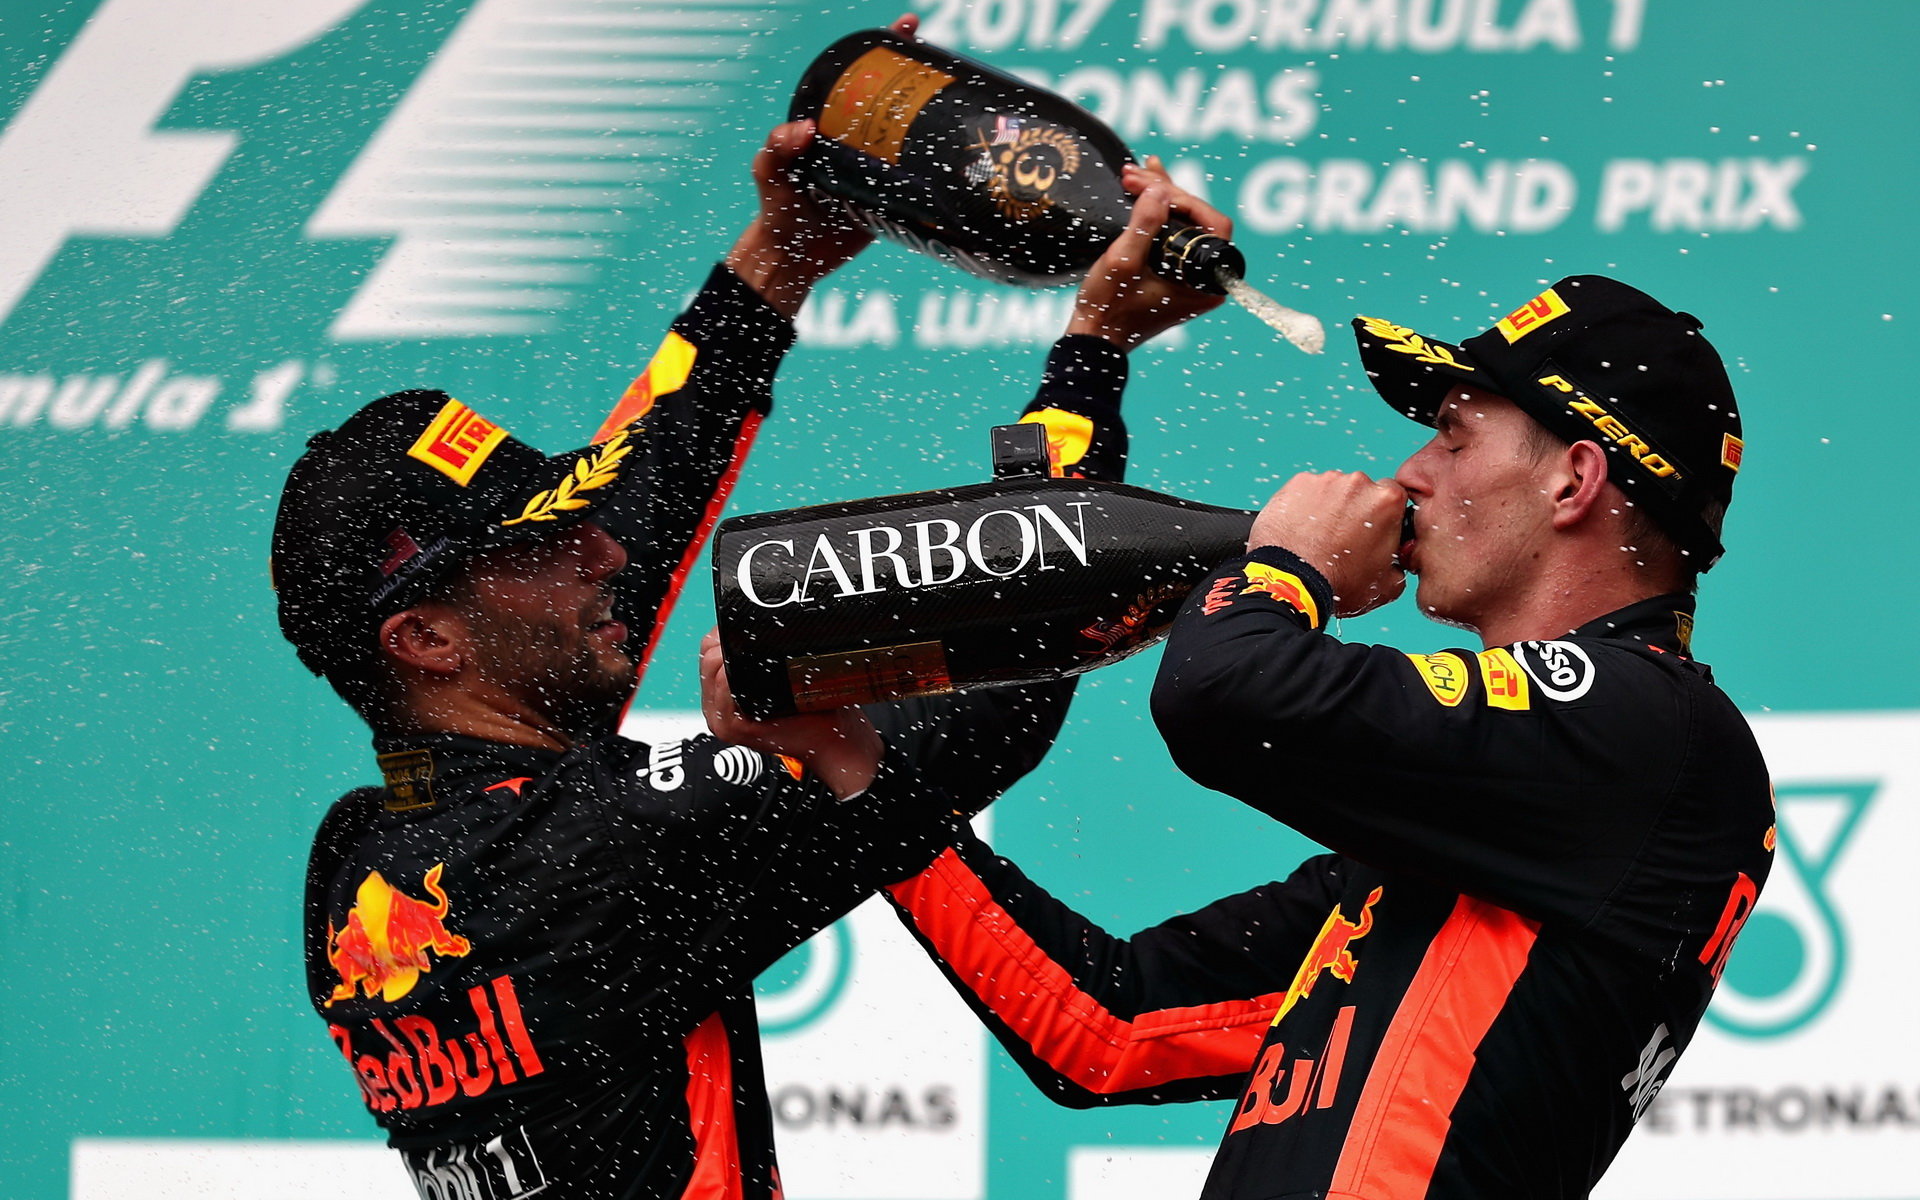 Daniel Ricciardo a Max Verstappen oslavují na pódiu po závodě v Malajsii